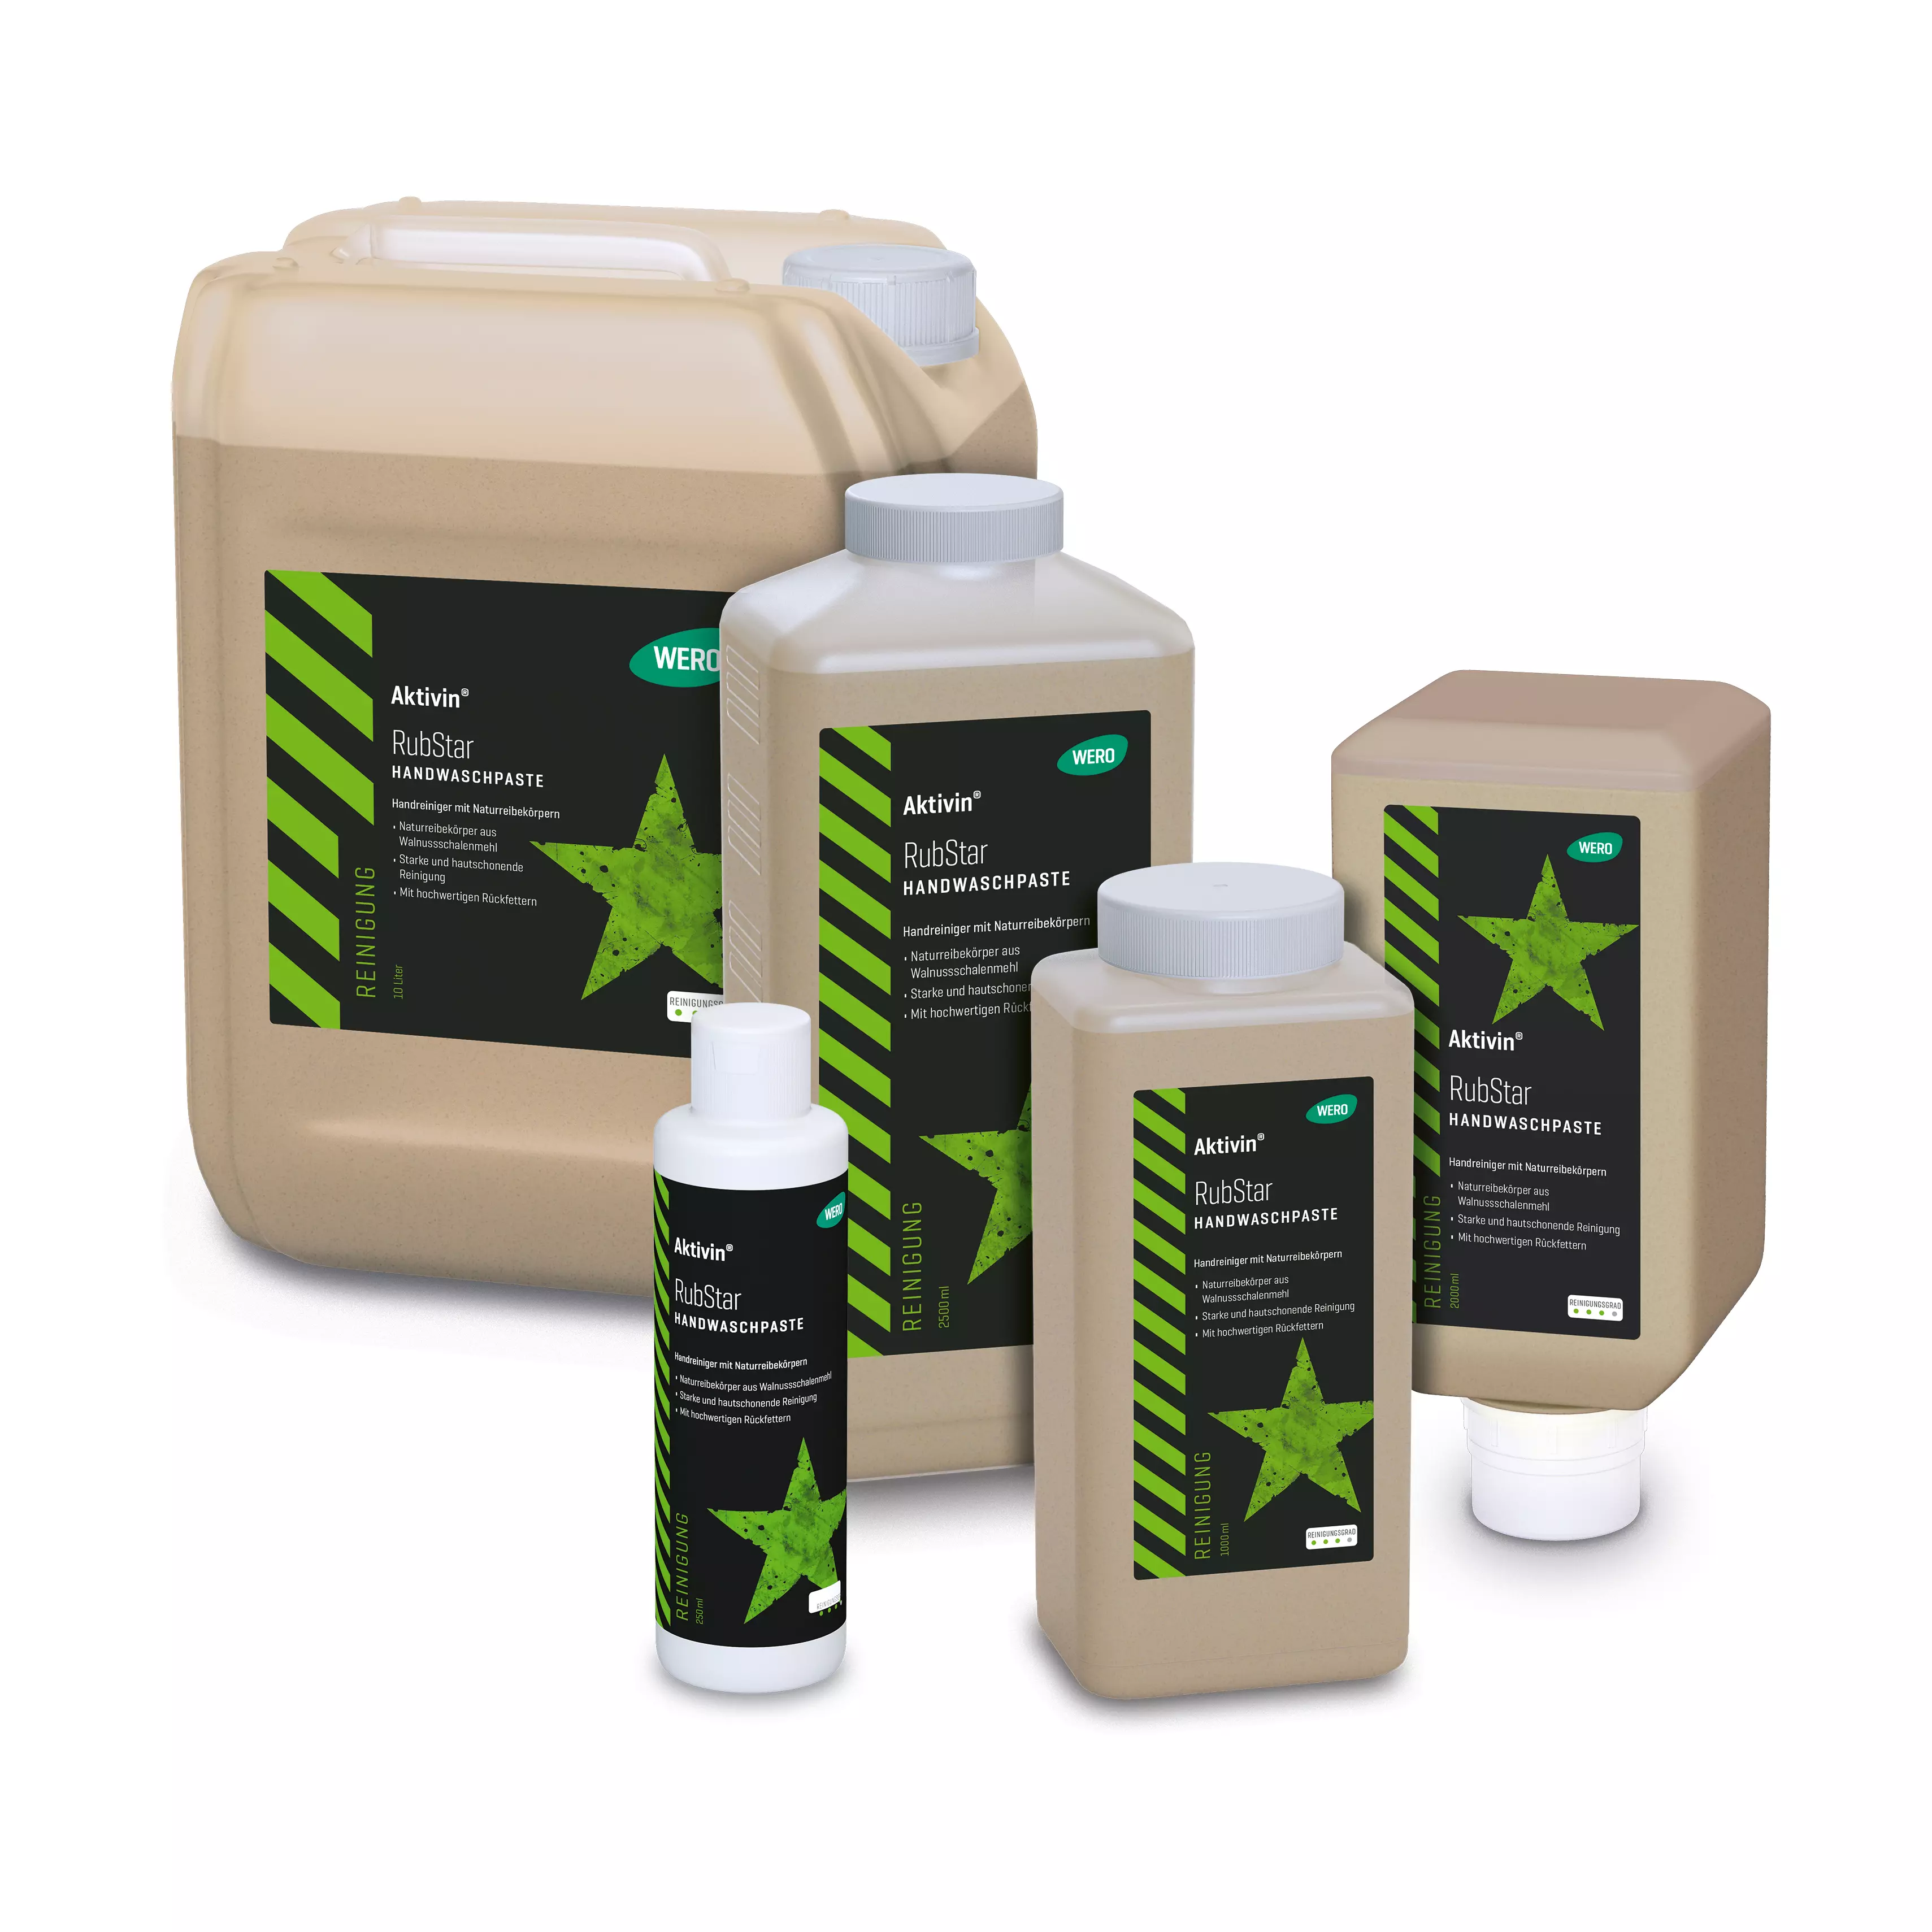 Skin cleansing Aktivin® RubStar - bottle, 250 ml